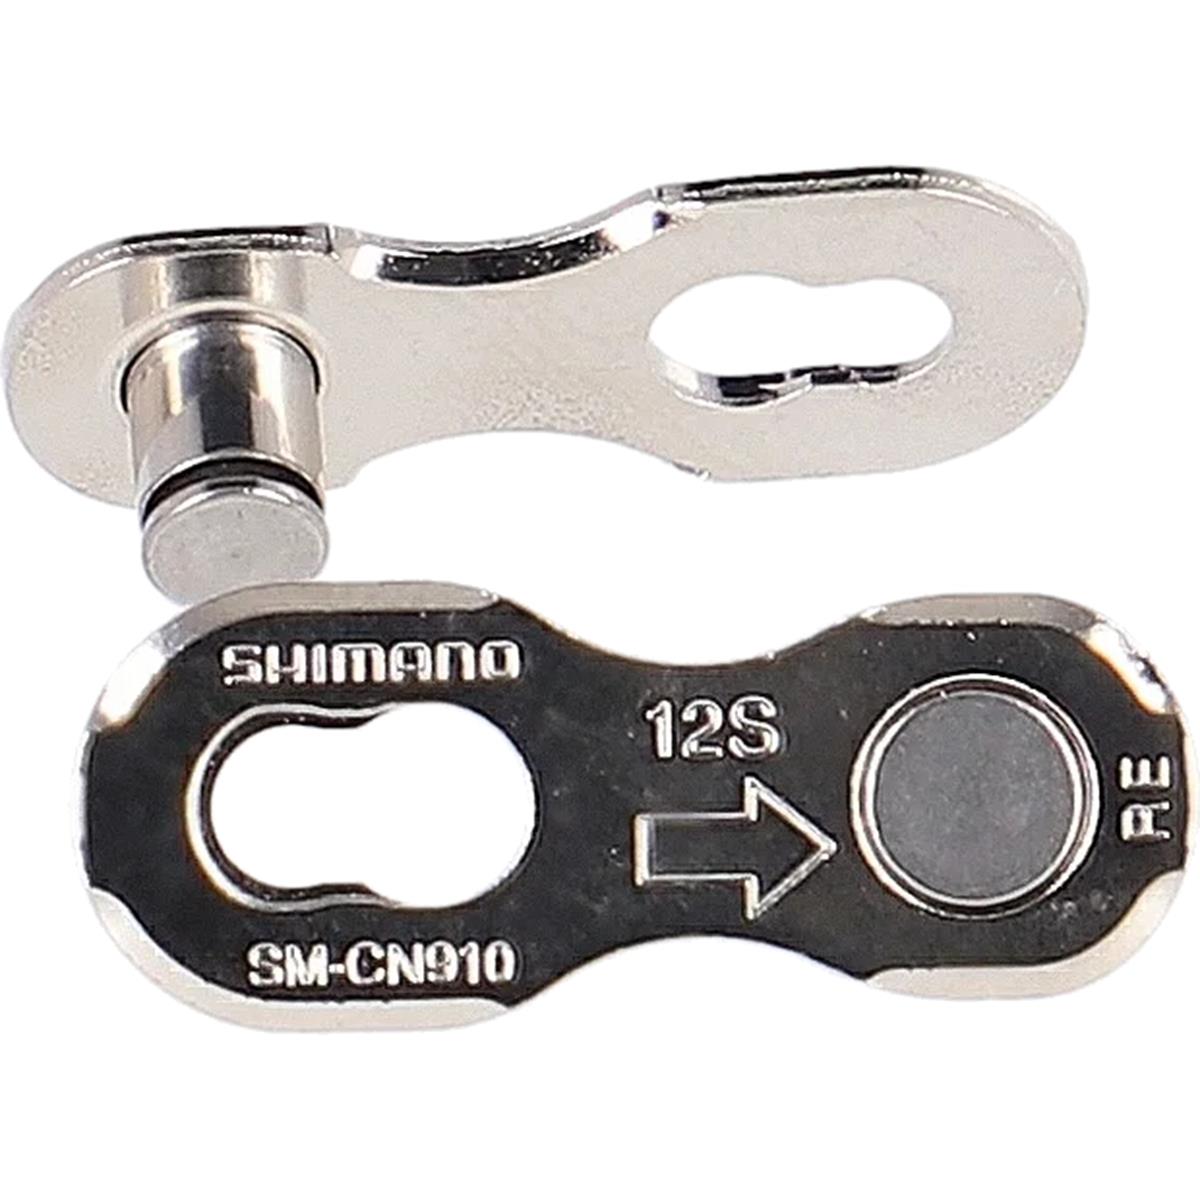 Shimano MTB-Kettenschloss SM-CN910 12-fach, Silber, 2 Stück